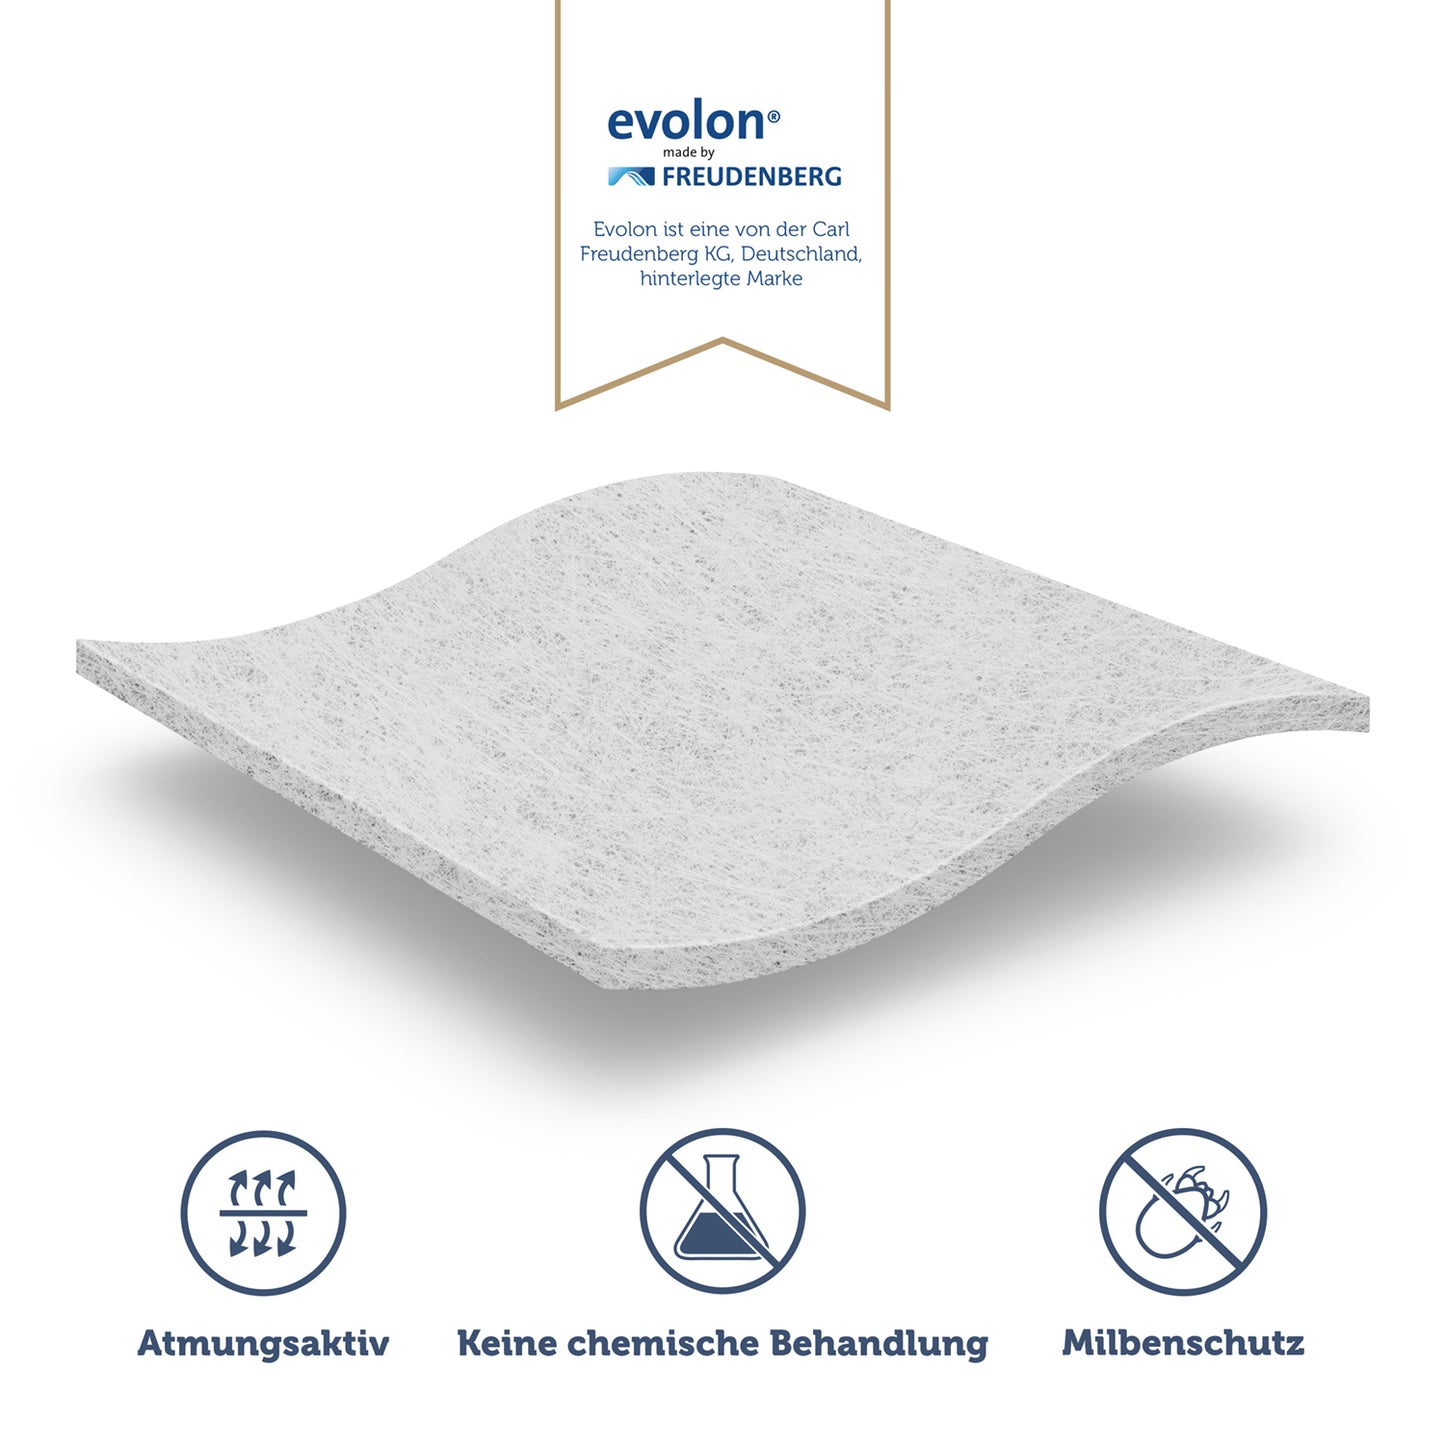 Die Eigenschaften des Matratzenbezugs aus Evolon-Material hervorgehoben durch Atmungsaktivität Verzicht auf chemische Behandlung und Milbenschutz.